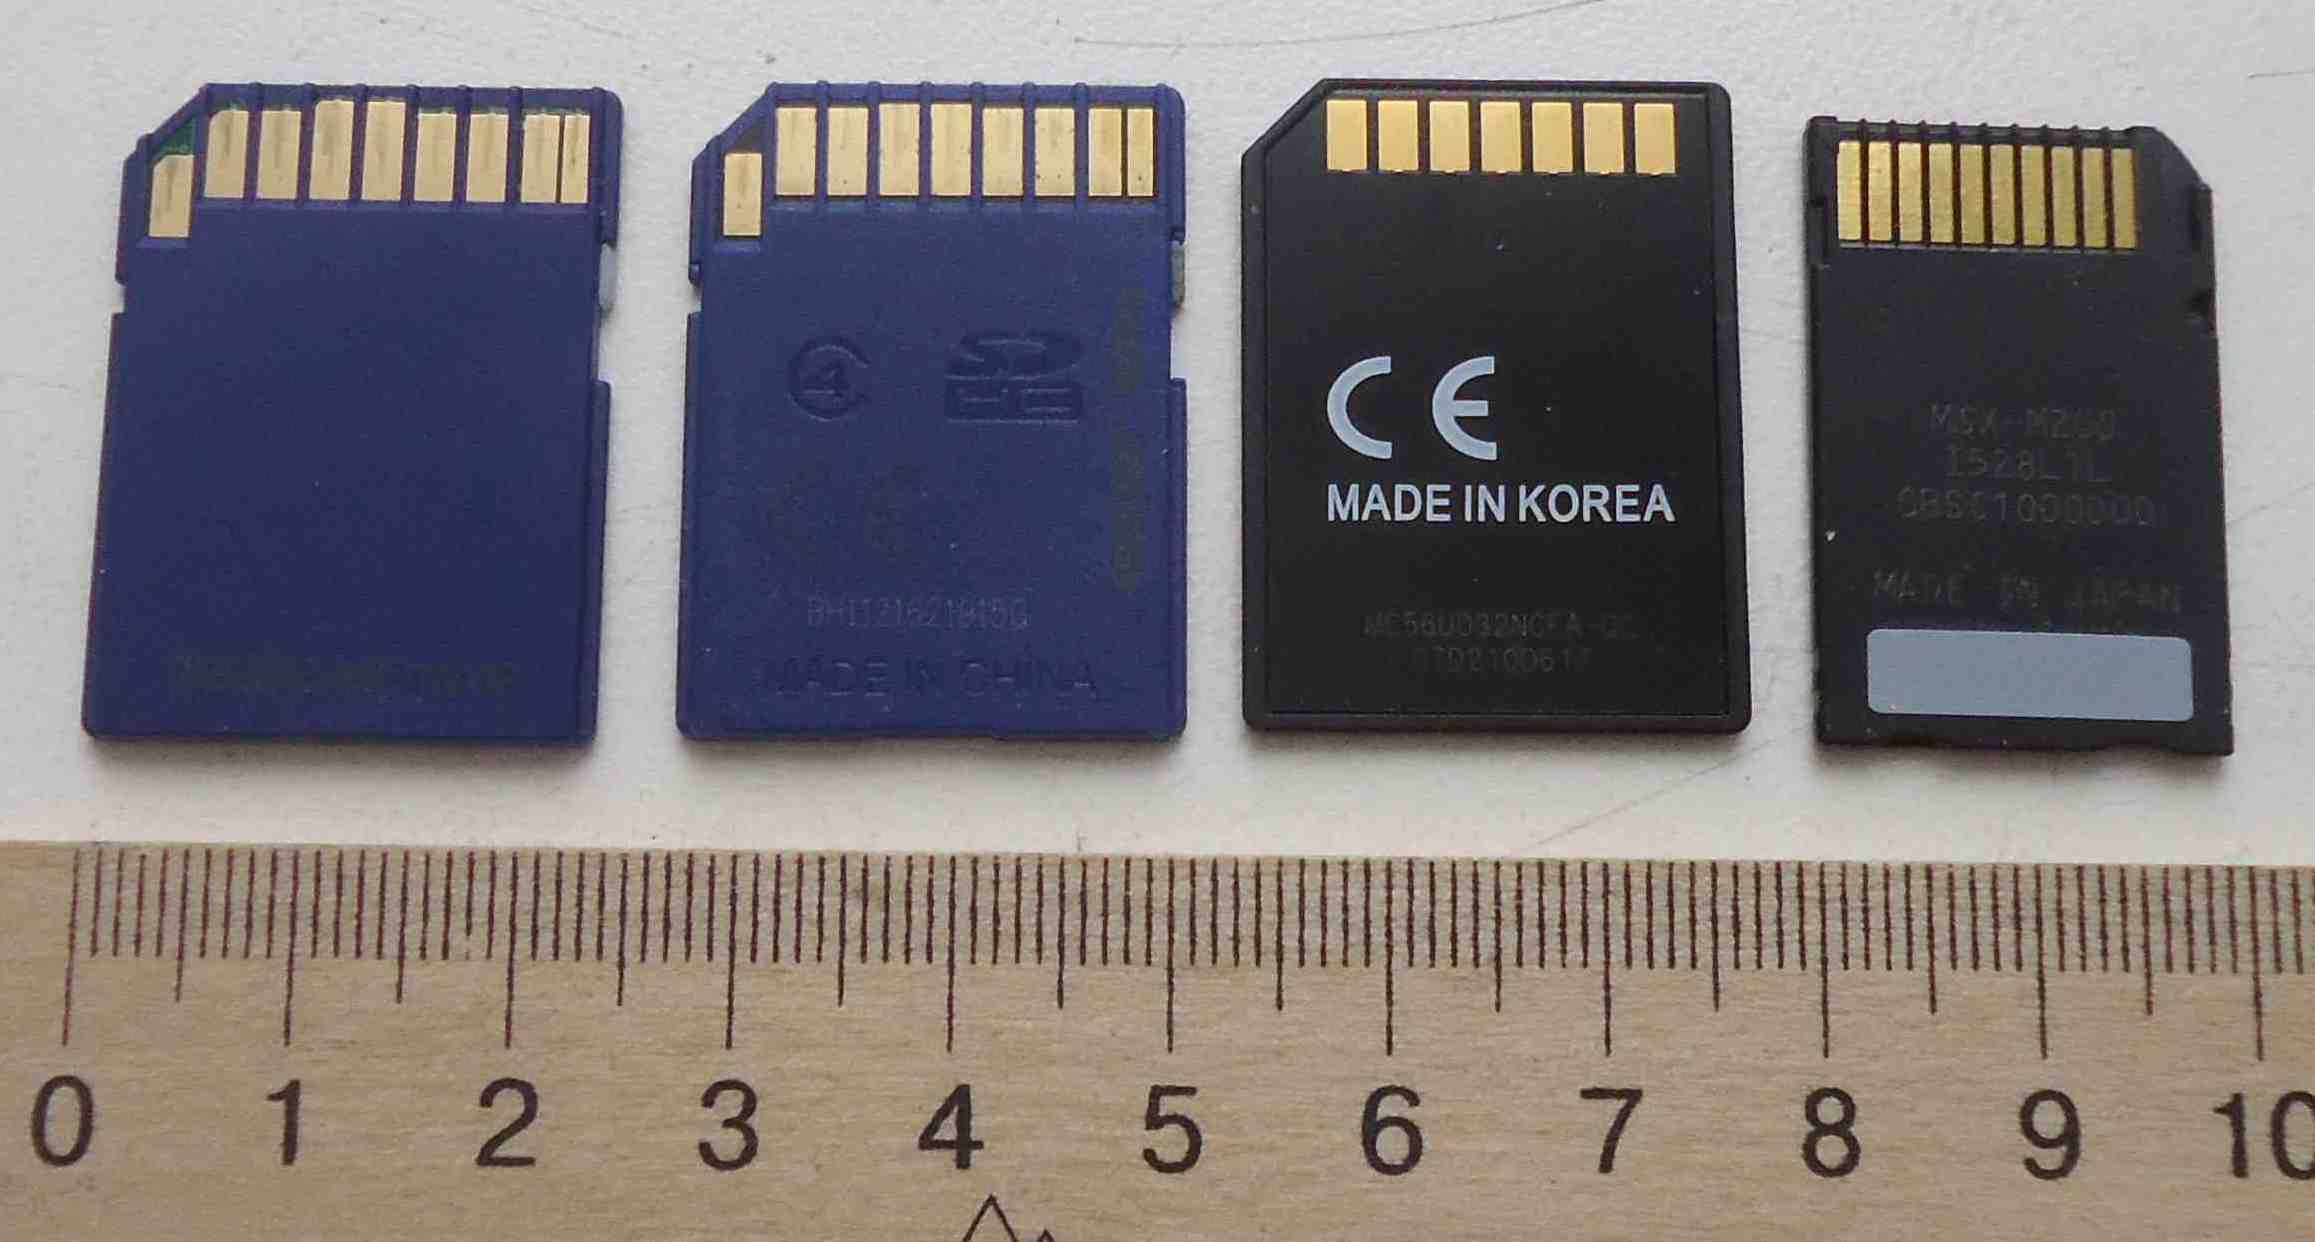 Карты памяти на 8GB, 4GB, 32MB, Sony 2GB, флешки